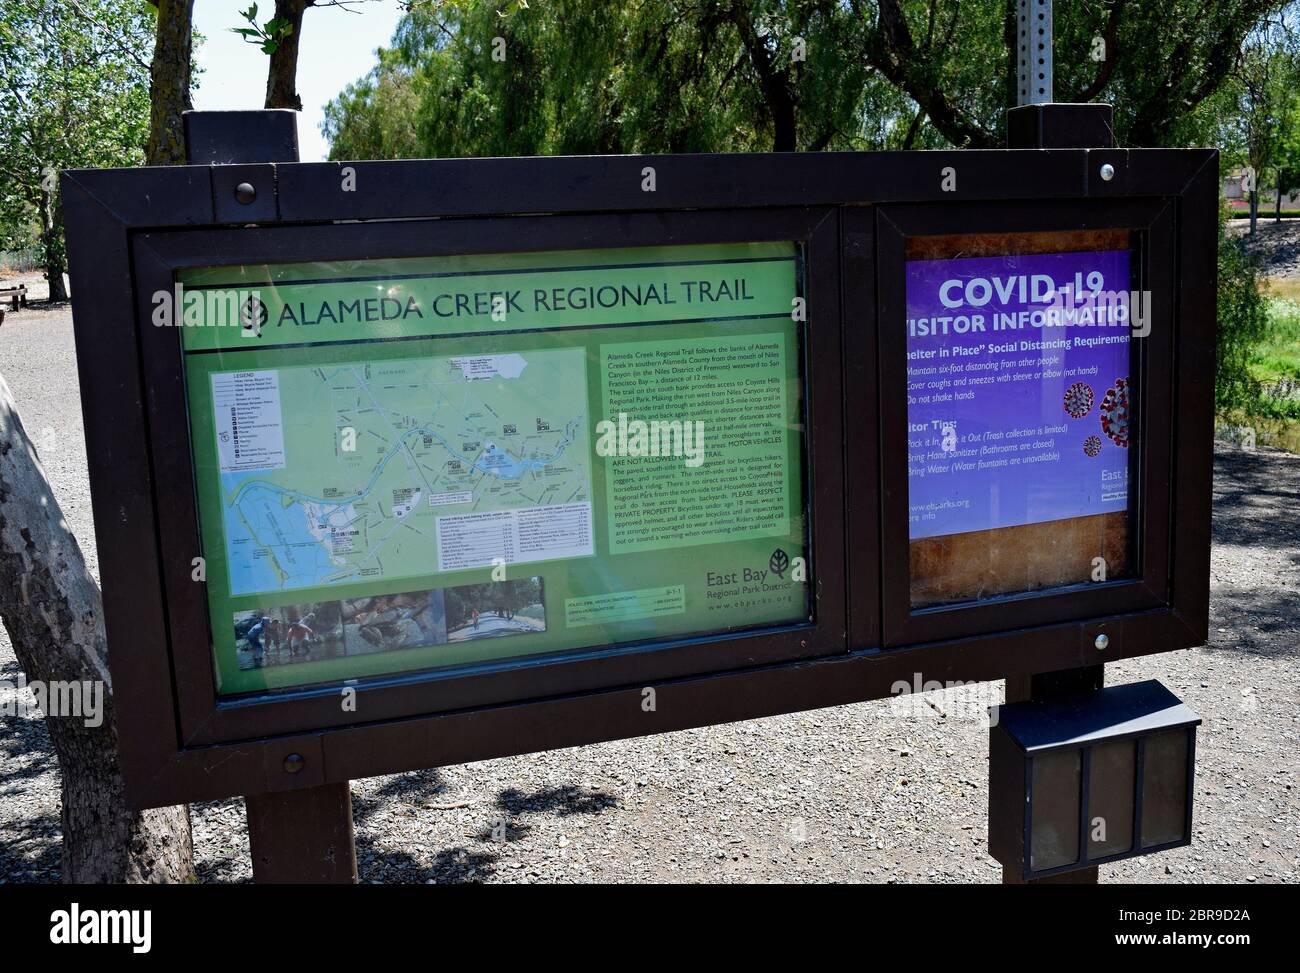 Covid-19 Park información para visitantes y mapa de signo sobre distanciamiento social en Alameda Creek Regional Trail, Isherwood Staging Area estacionamiento en Fremont, California Foto de stock